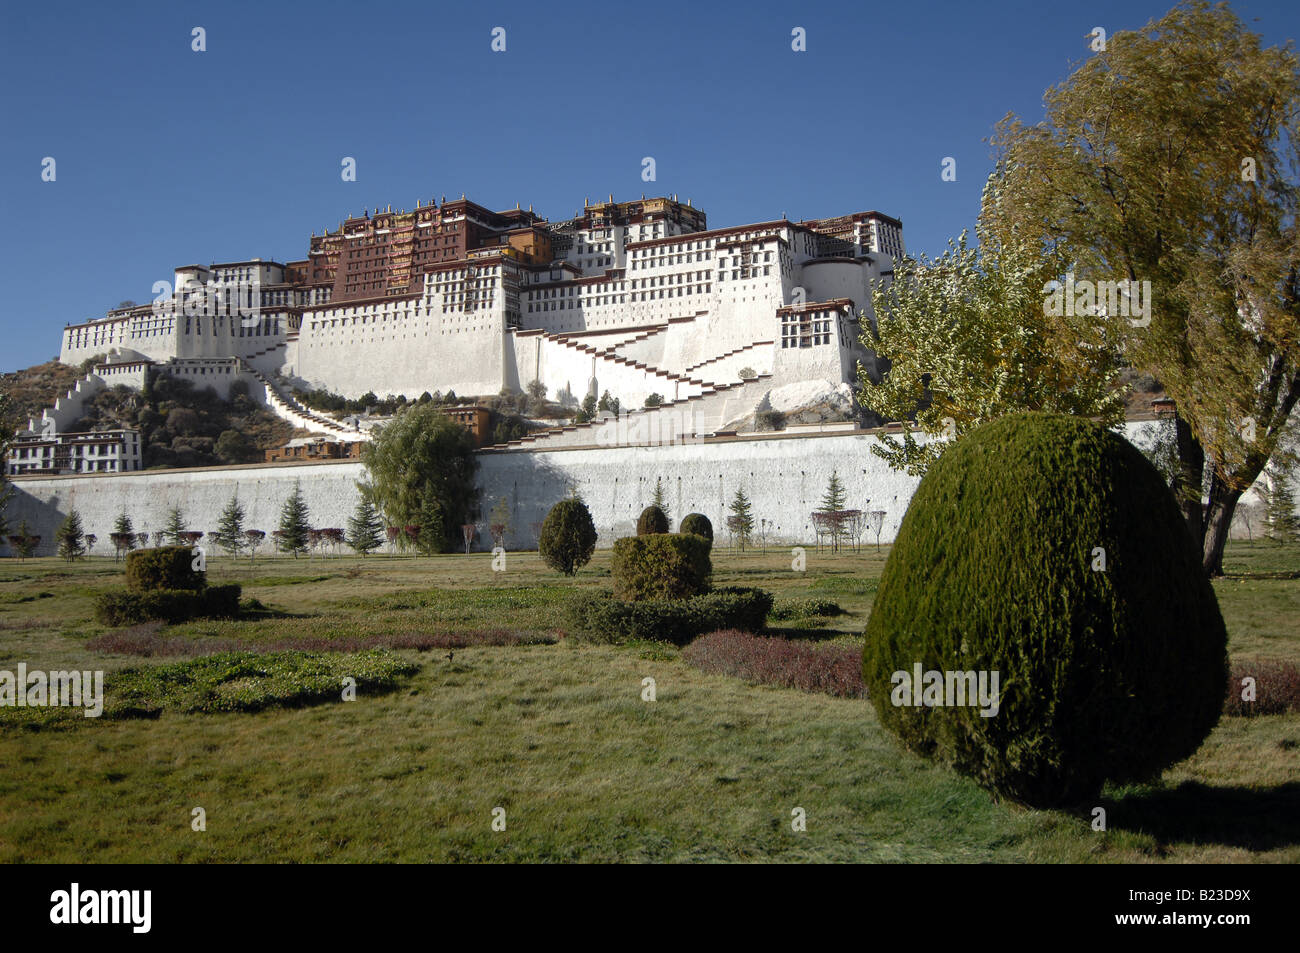 Low angle view of palace on hill, Potala Palace, Lhasa, Tibet, China Stock Photo